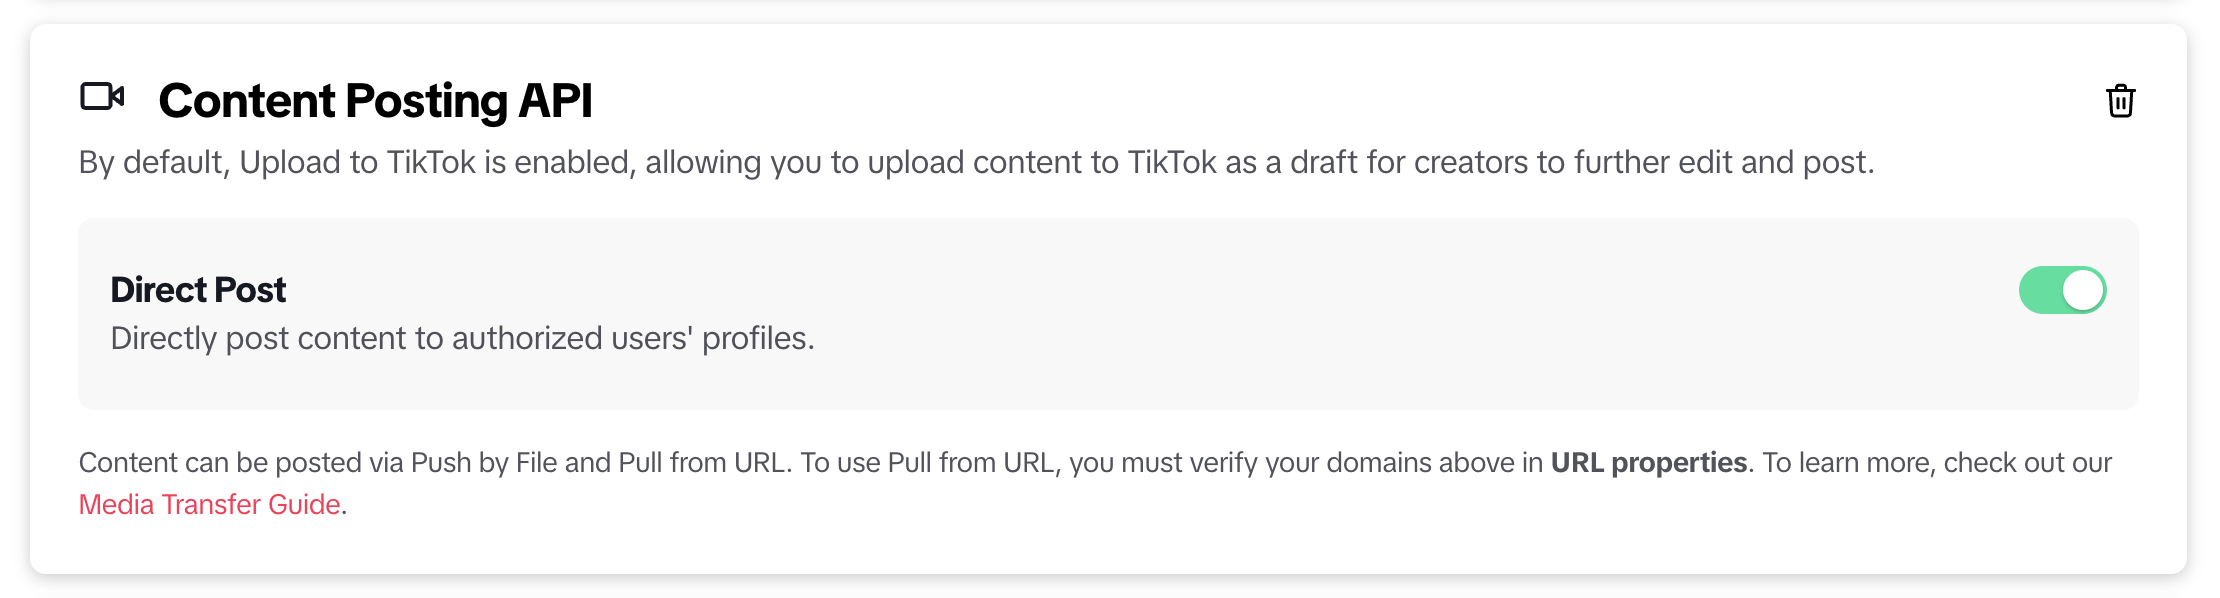 TikTok Direct Post API